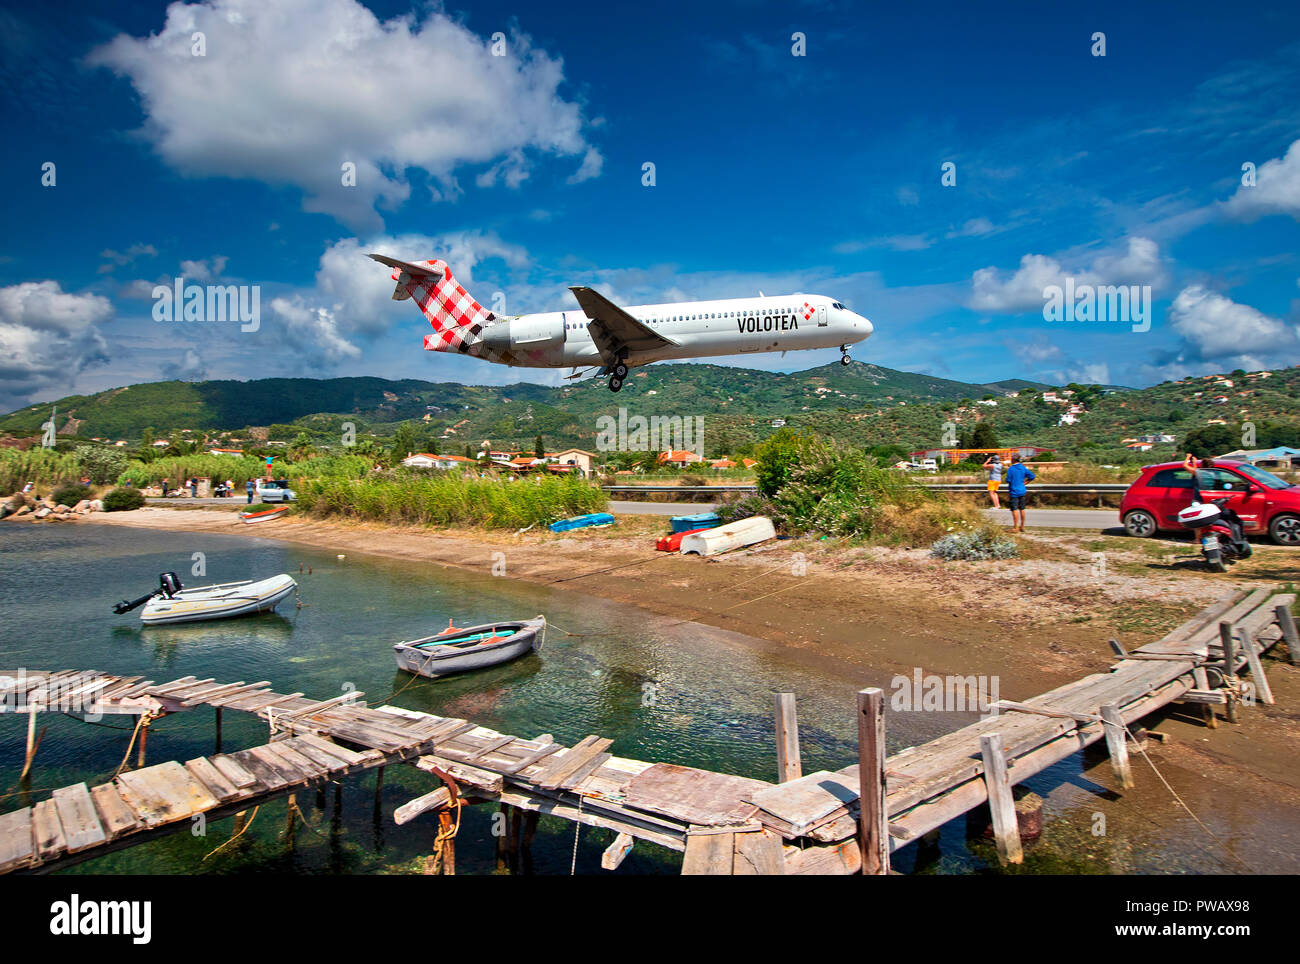 Flugzeug Landung Am Flughafen Der Insel Skiathos Sporaden Magnesia Thessalien Griechenland Stockfotografie Alamy